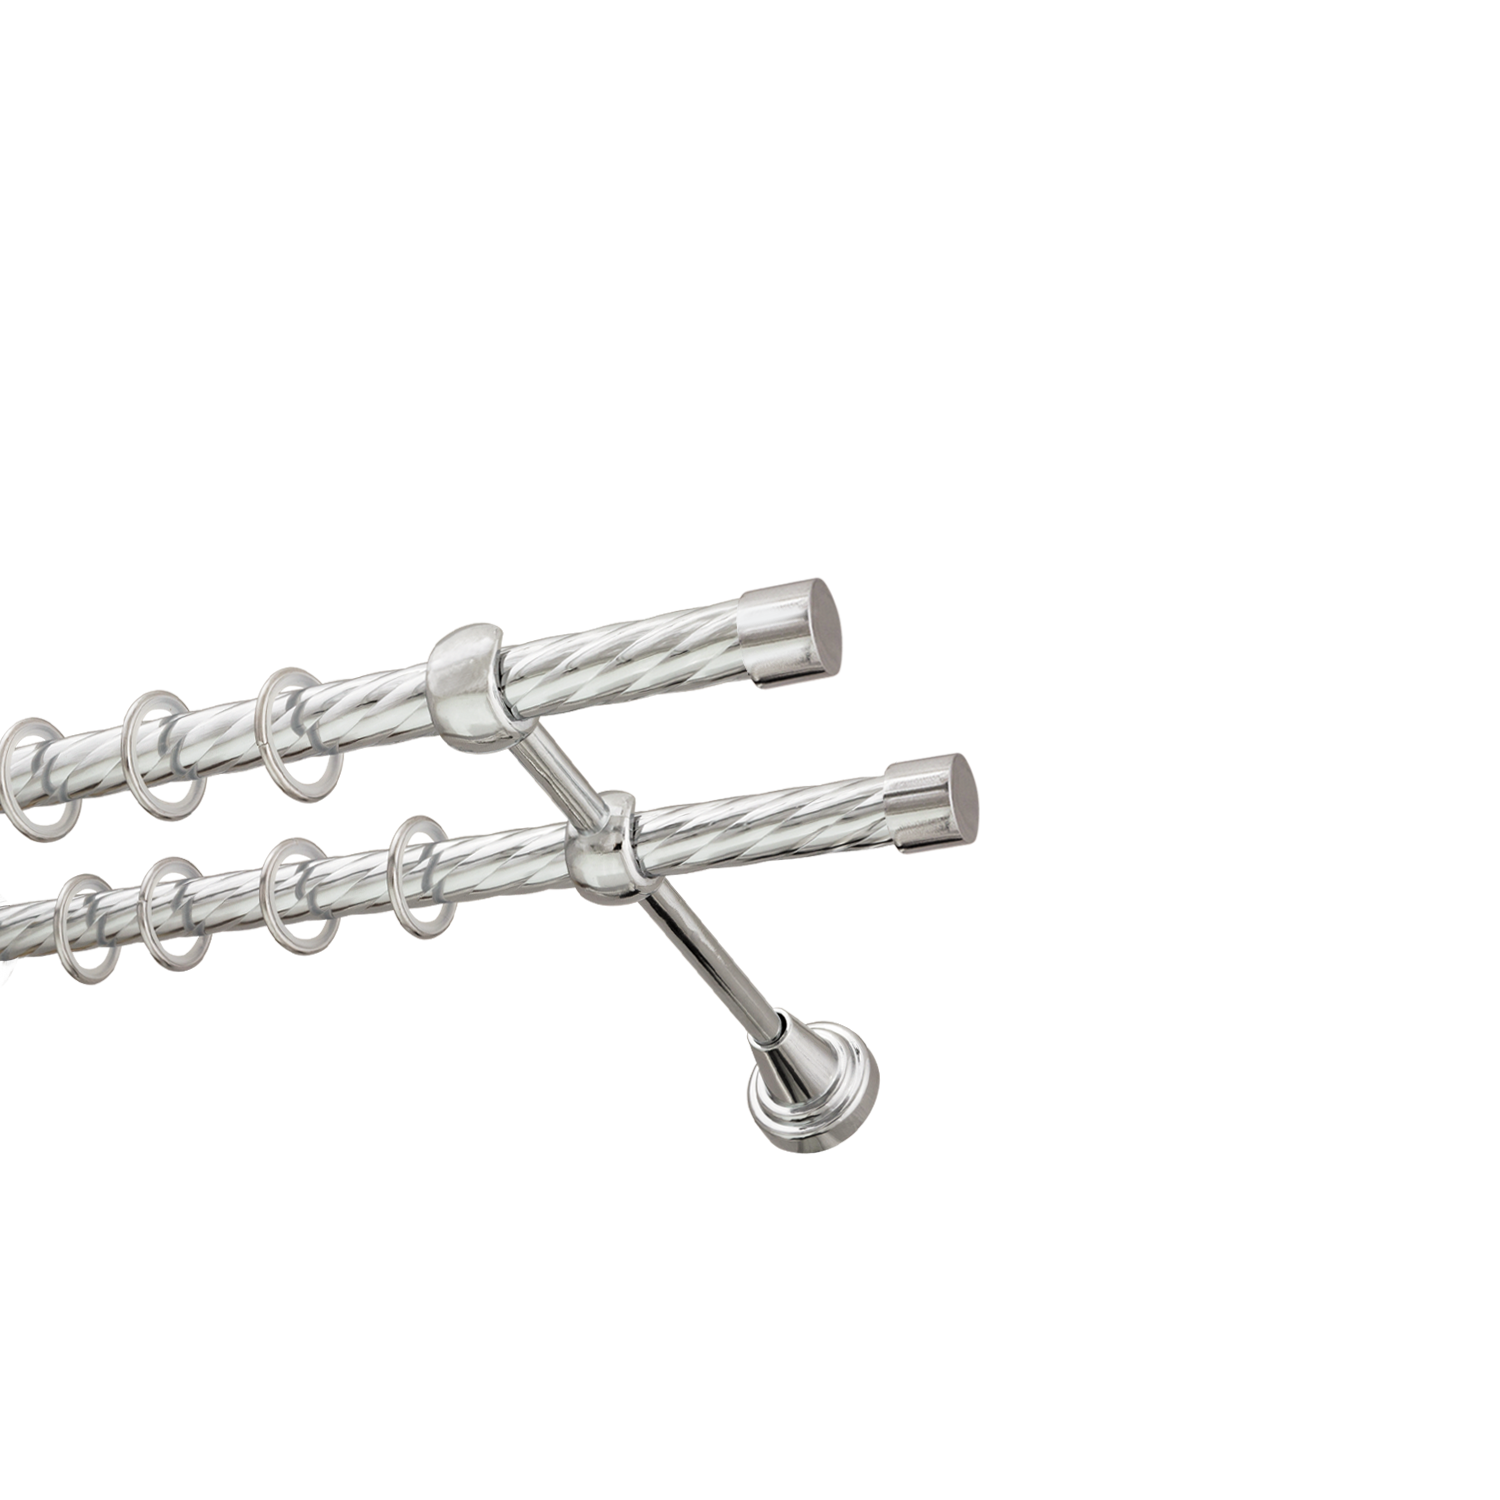 Металлический карниз для штор Заглушка, двухрядный 16/16 мм, серебро, витая штанга, длина 140 см